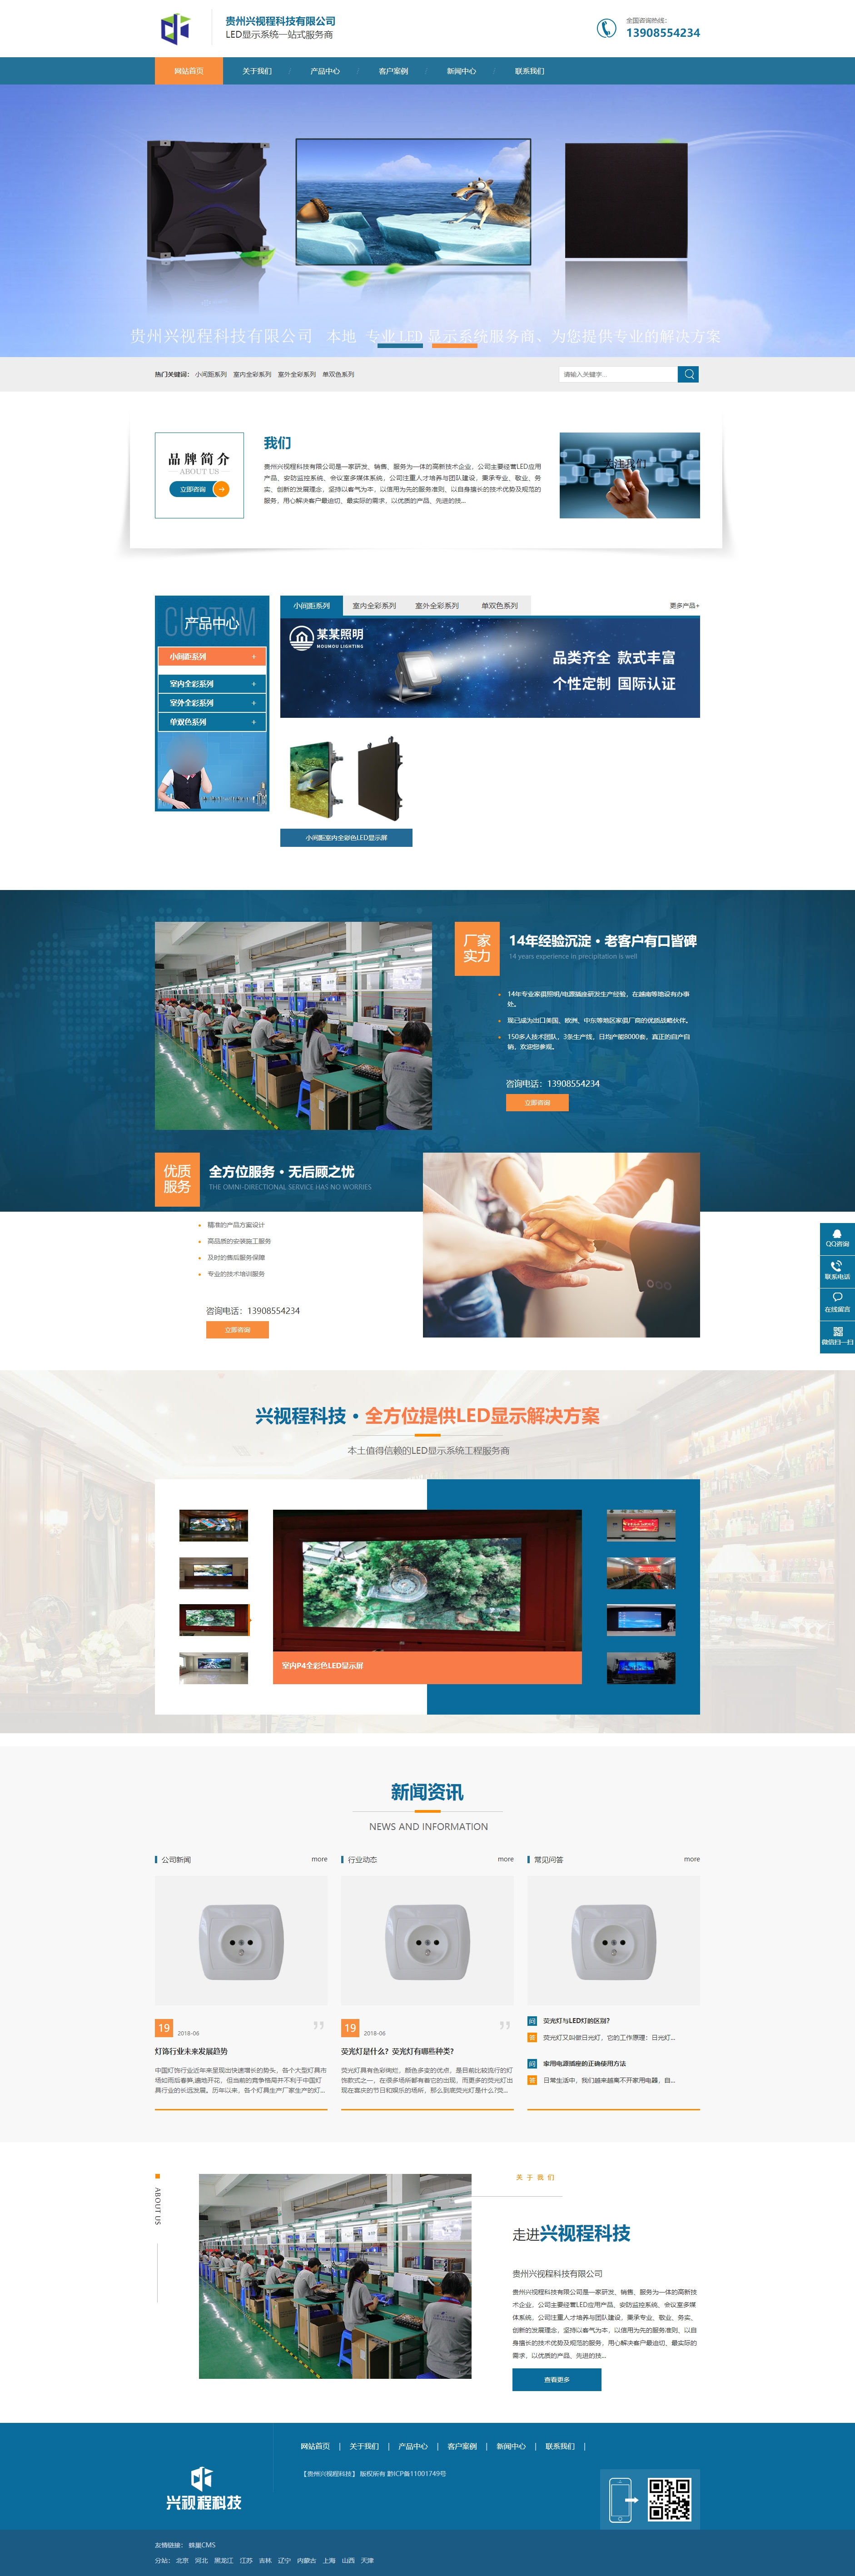 贵阳贵州兴视程科技有限公司 网站正式上线